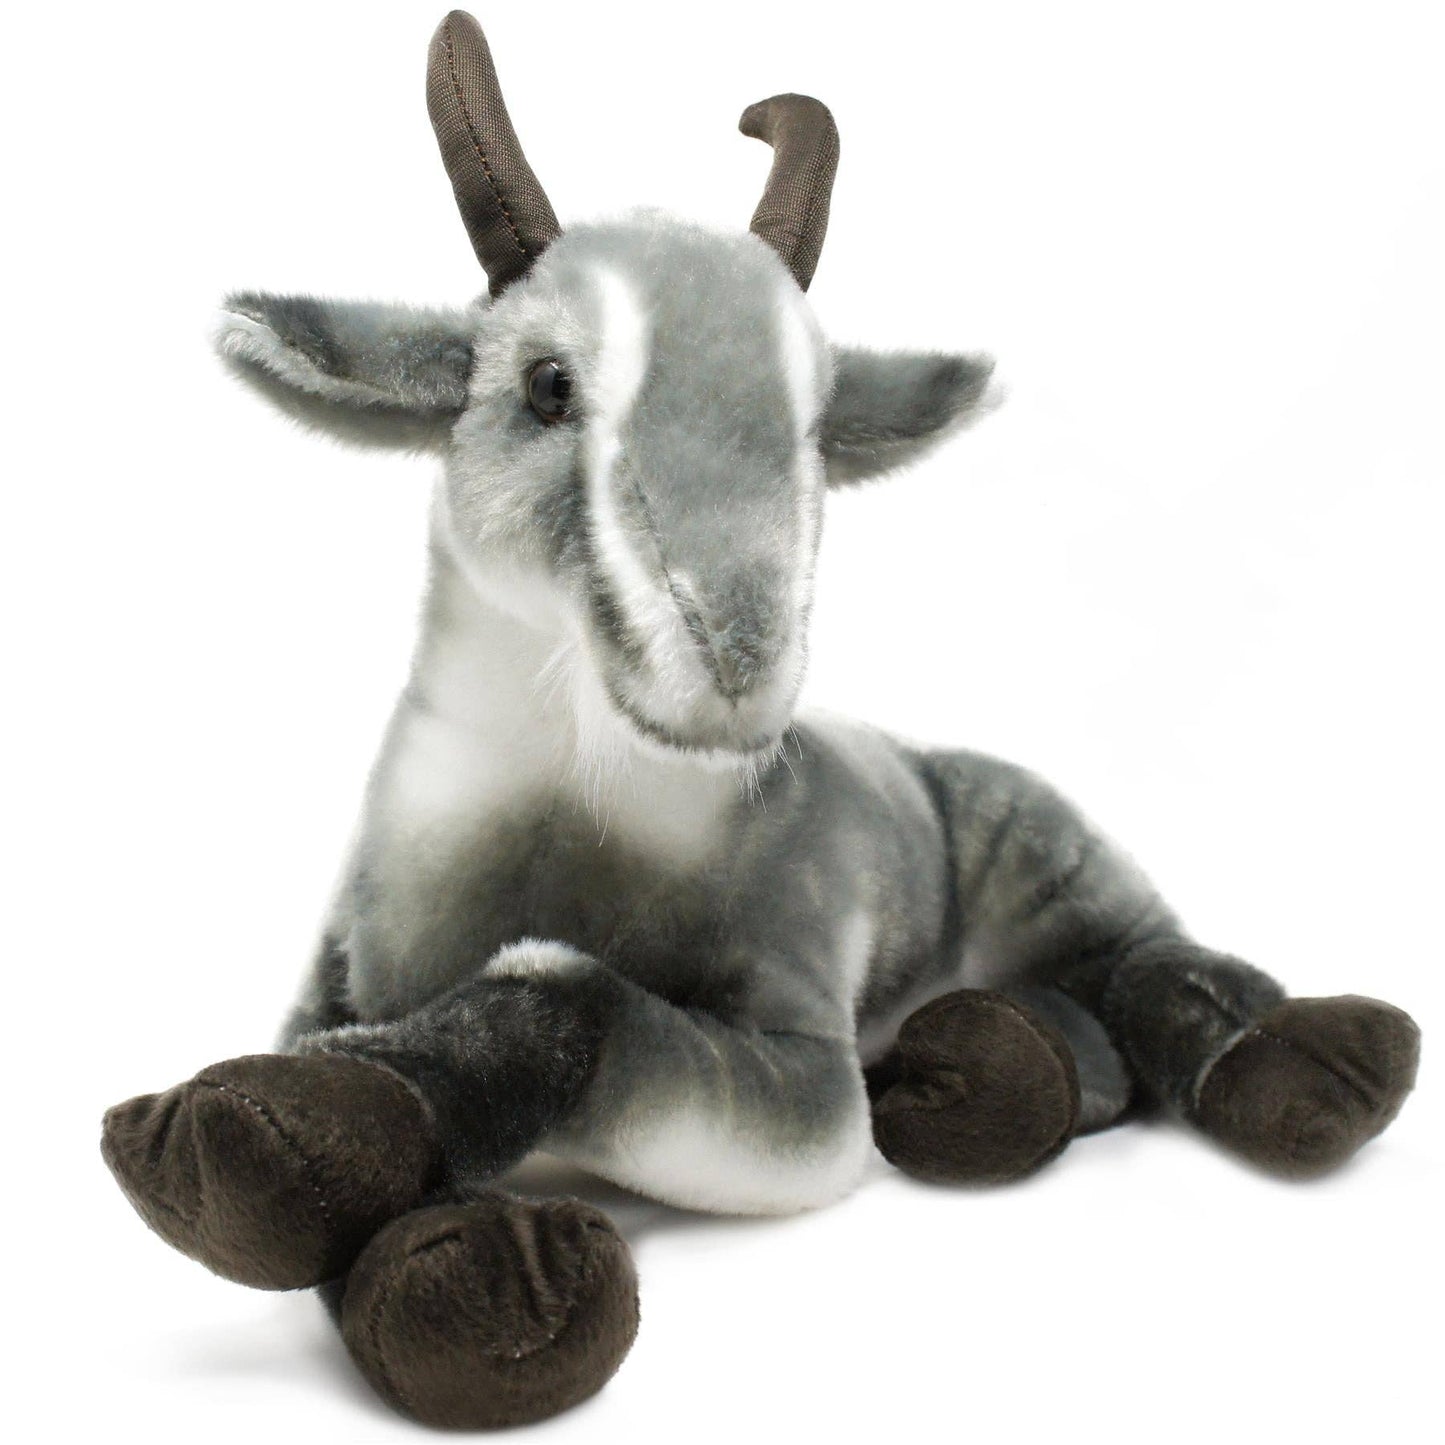 Patrick The Pygmy Goat | Stuffed Animal Plush